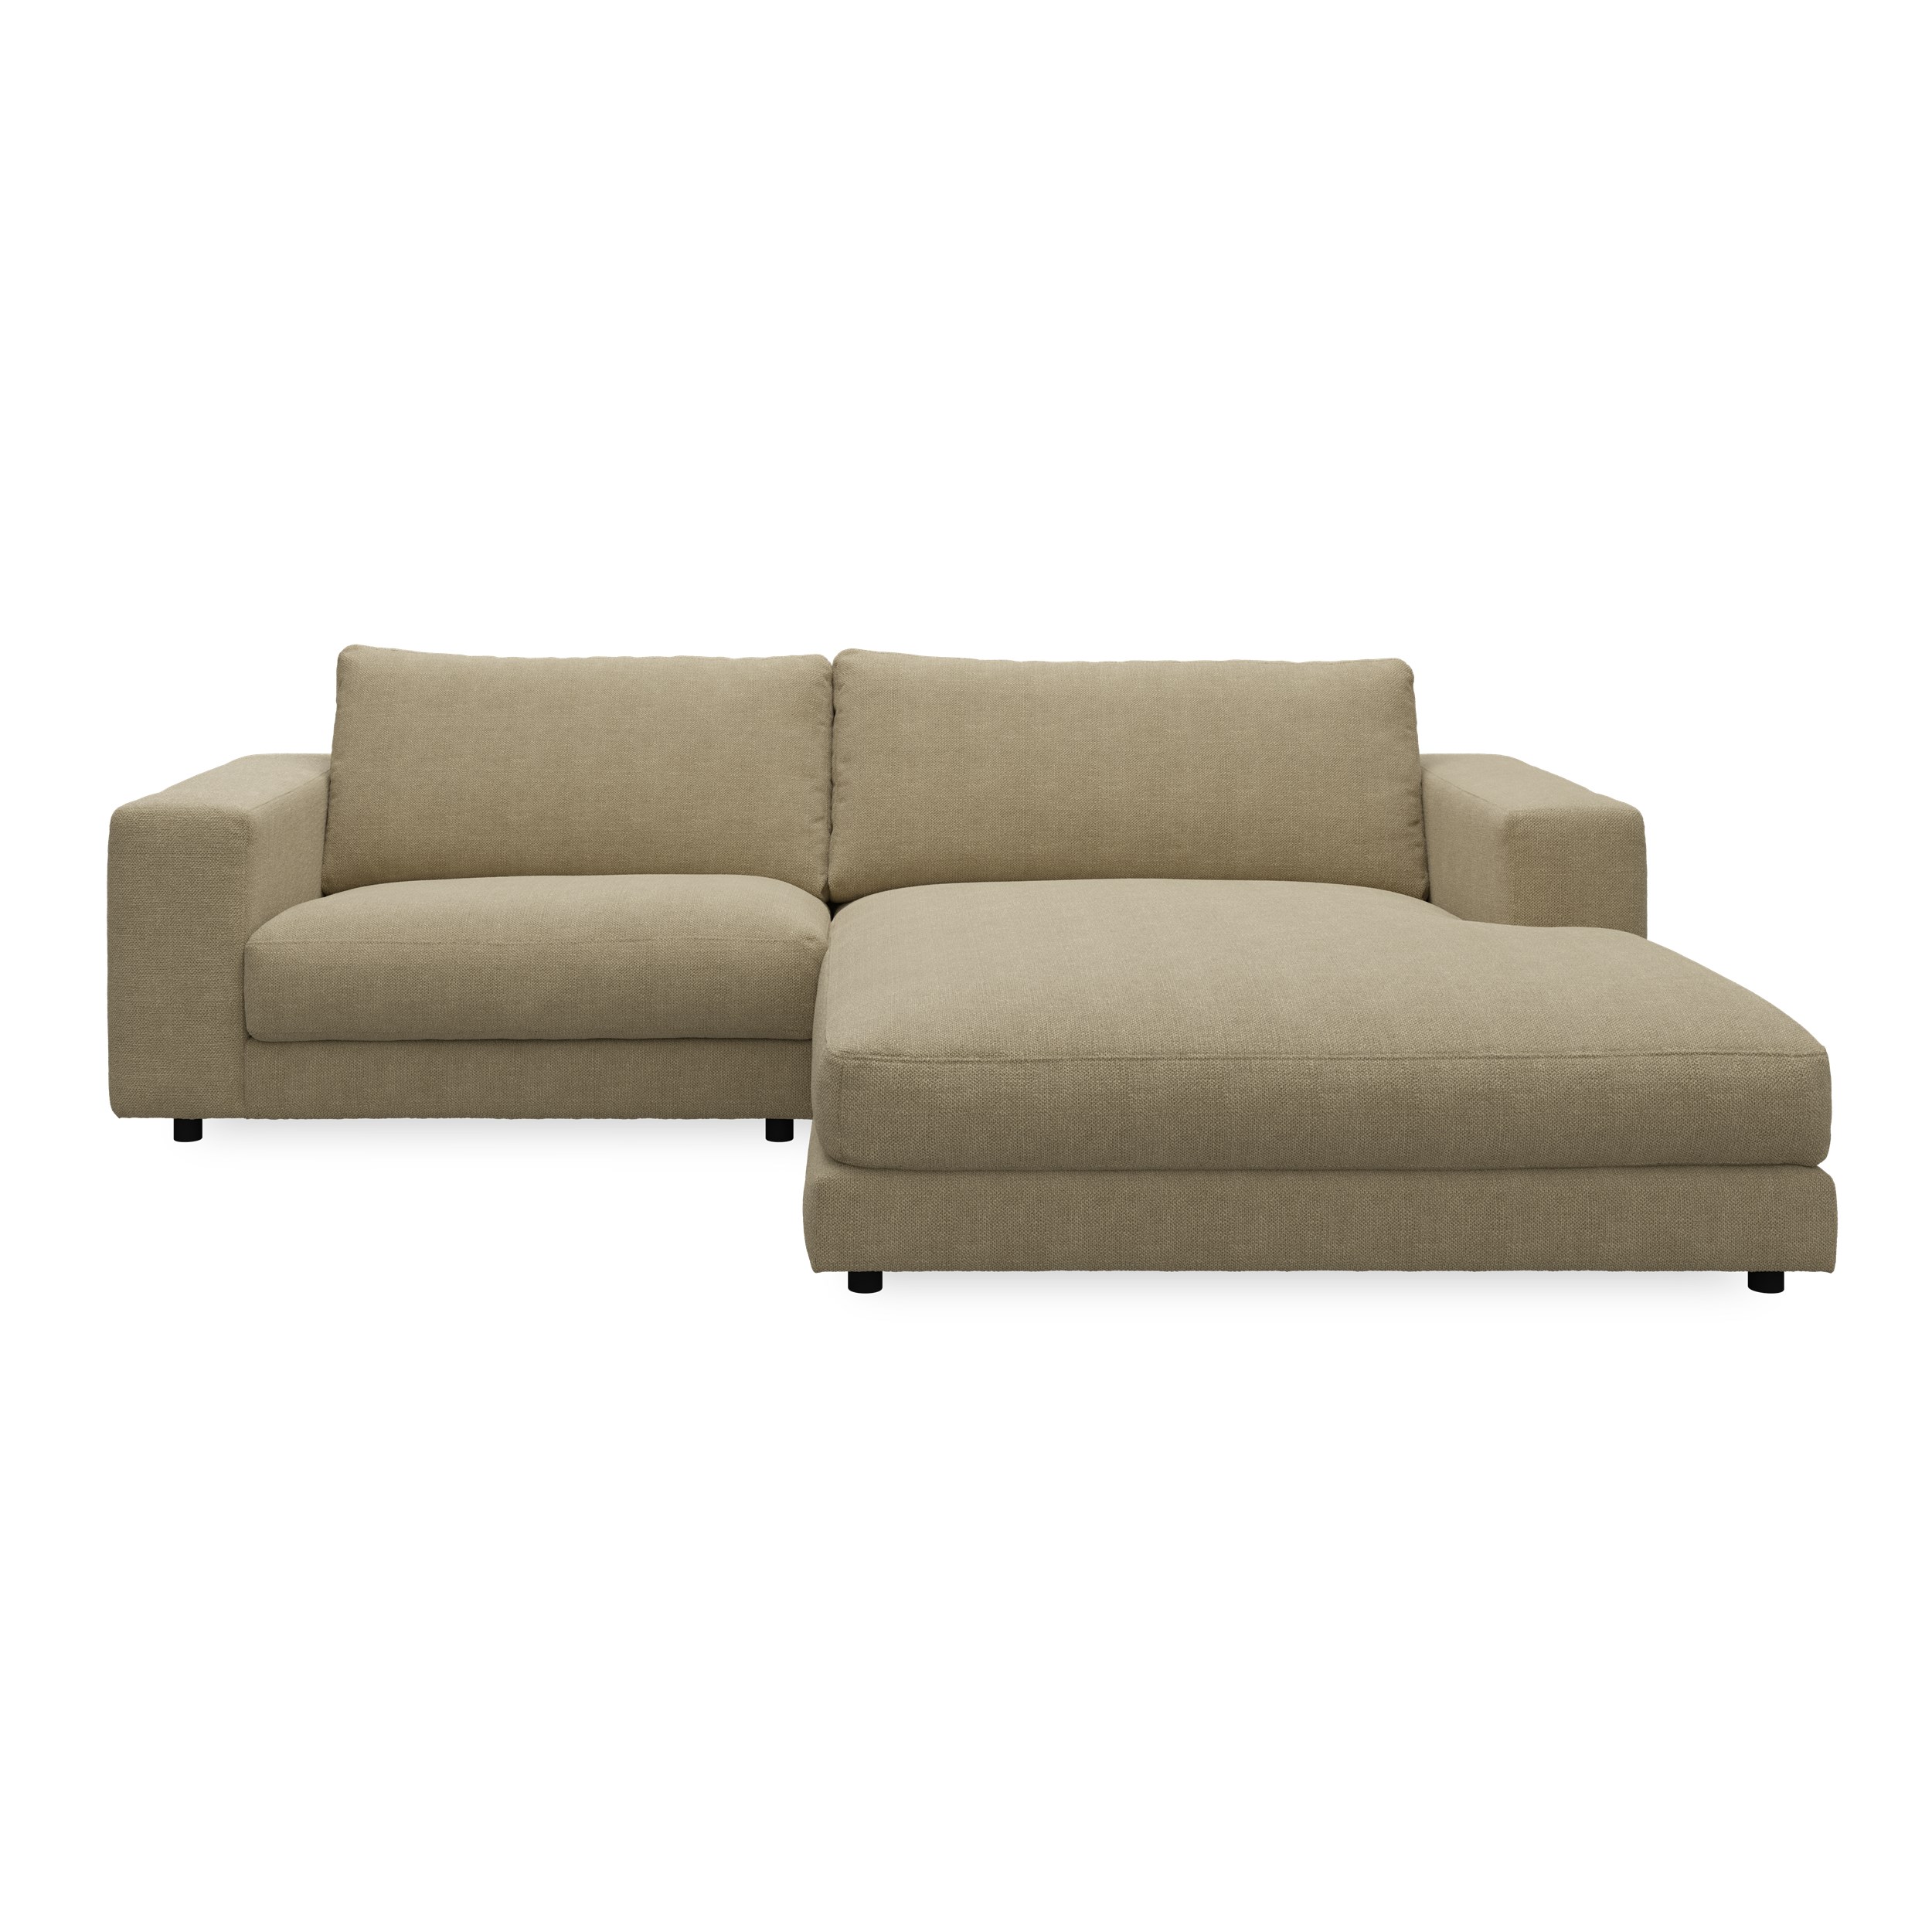 Bennent högervänd soffa med schäslong - Picasso Sand klädsel, ben i svart plast och S:skum/fib/din/sili R:Dun/skum